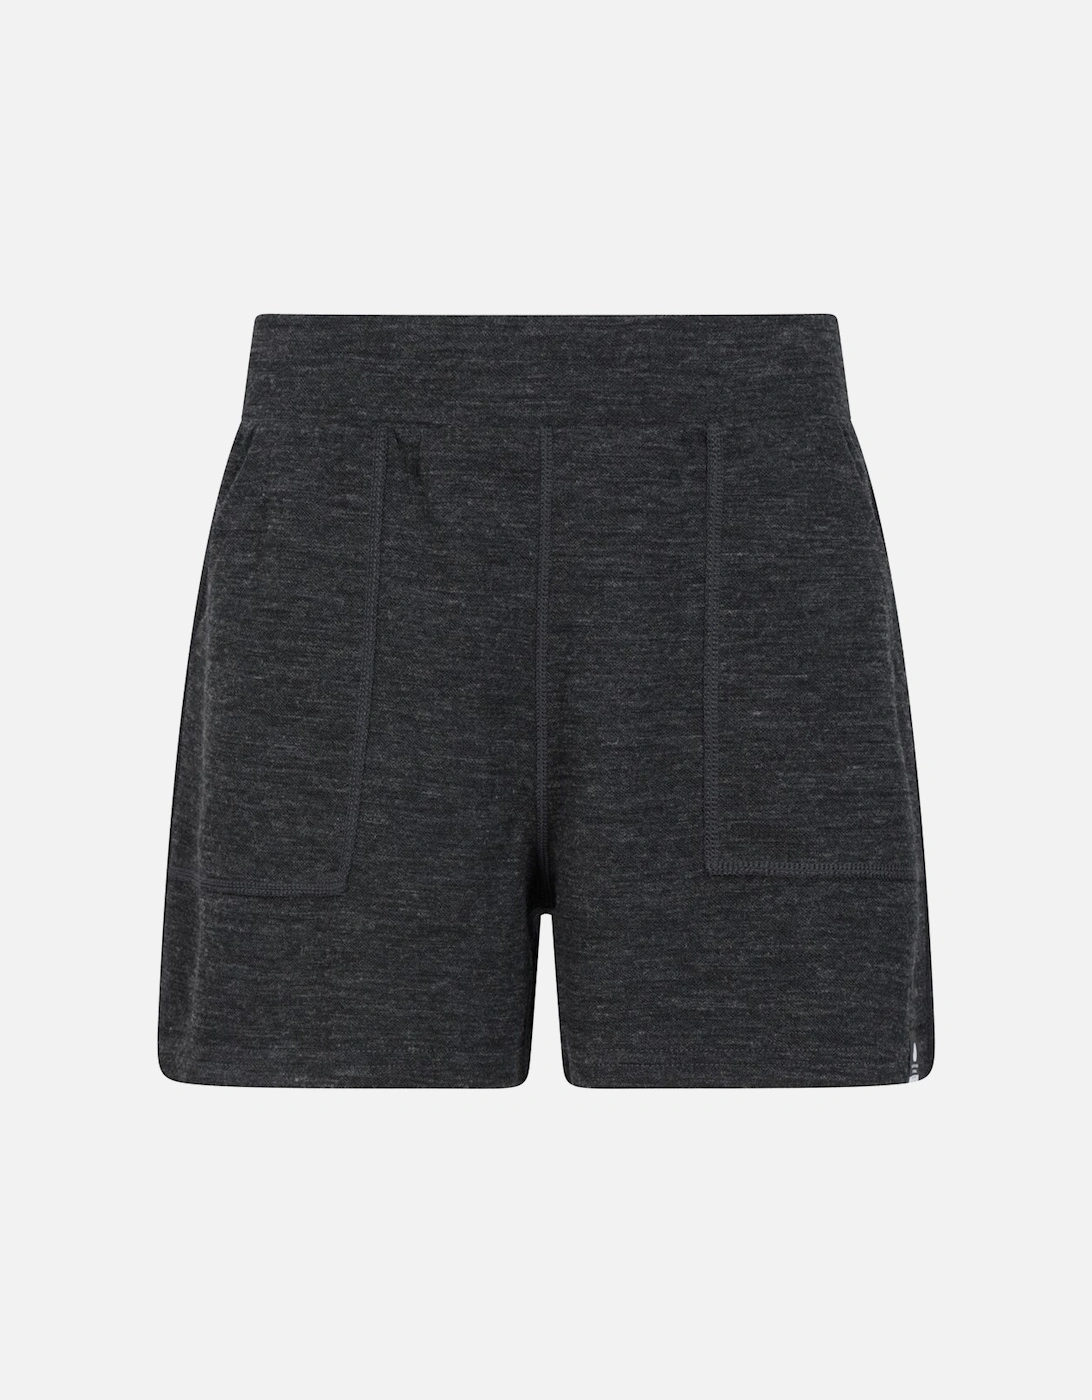 Womens/Ladies Merino Wool Sweat Shorts, 5 of 4